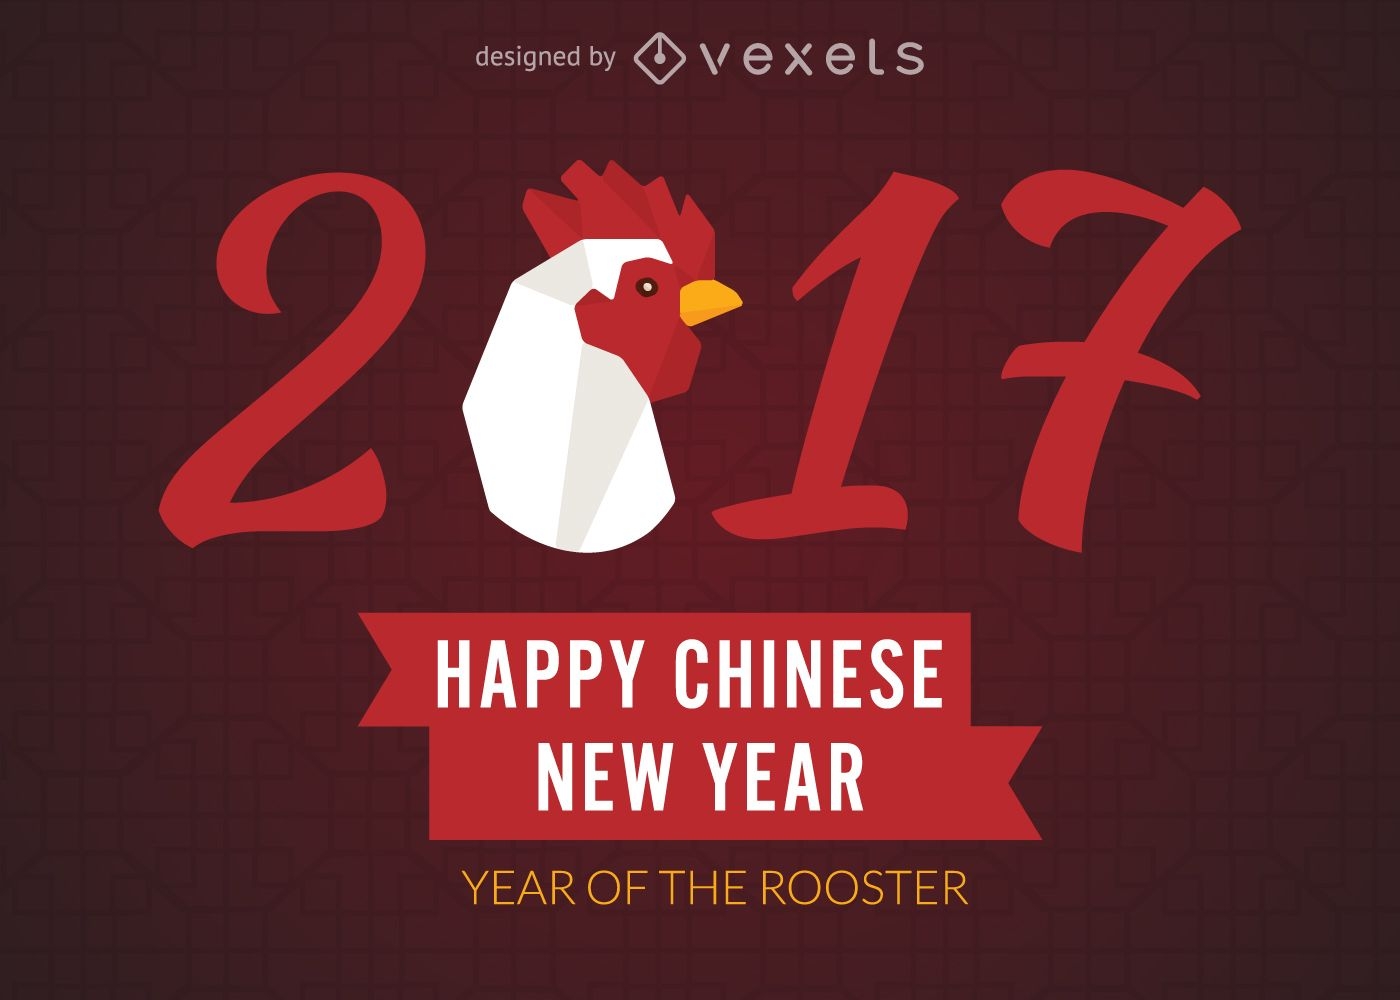 2017 año nuevo chino del gallo